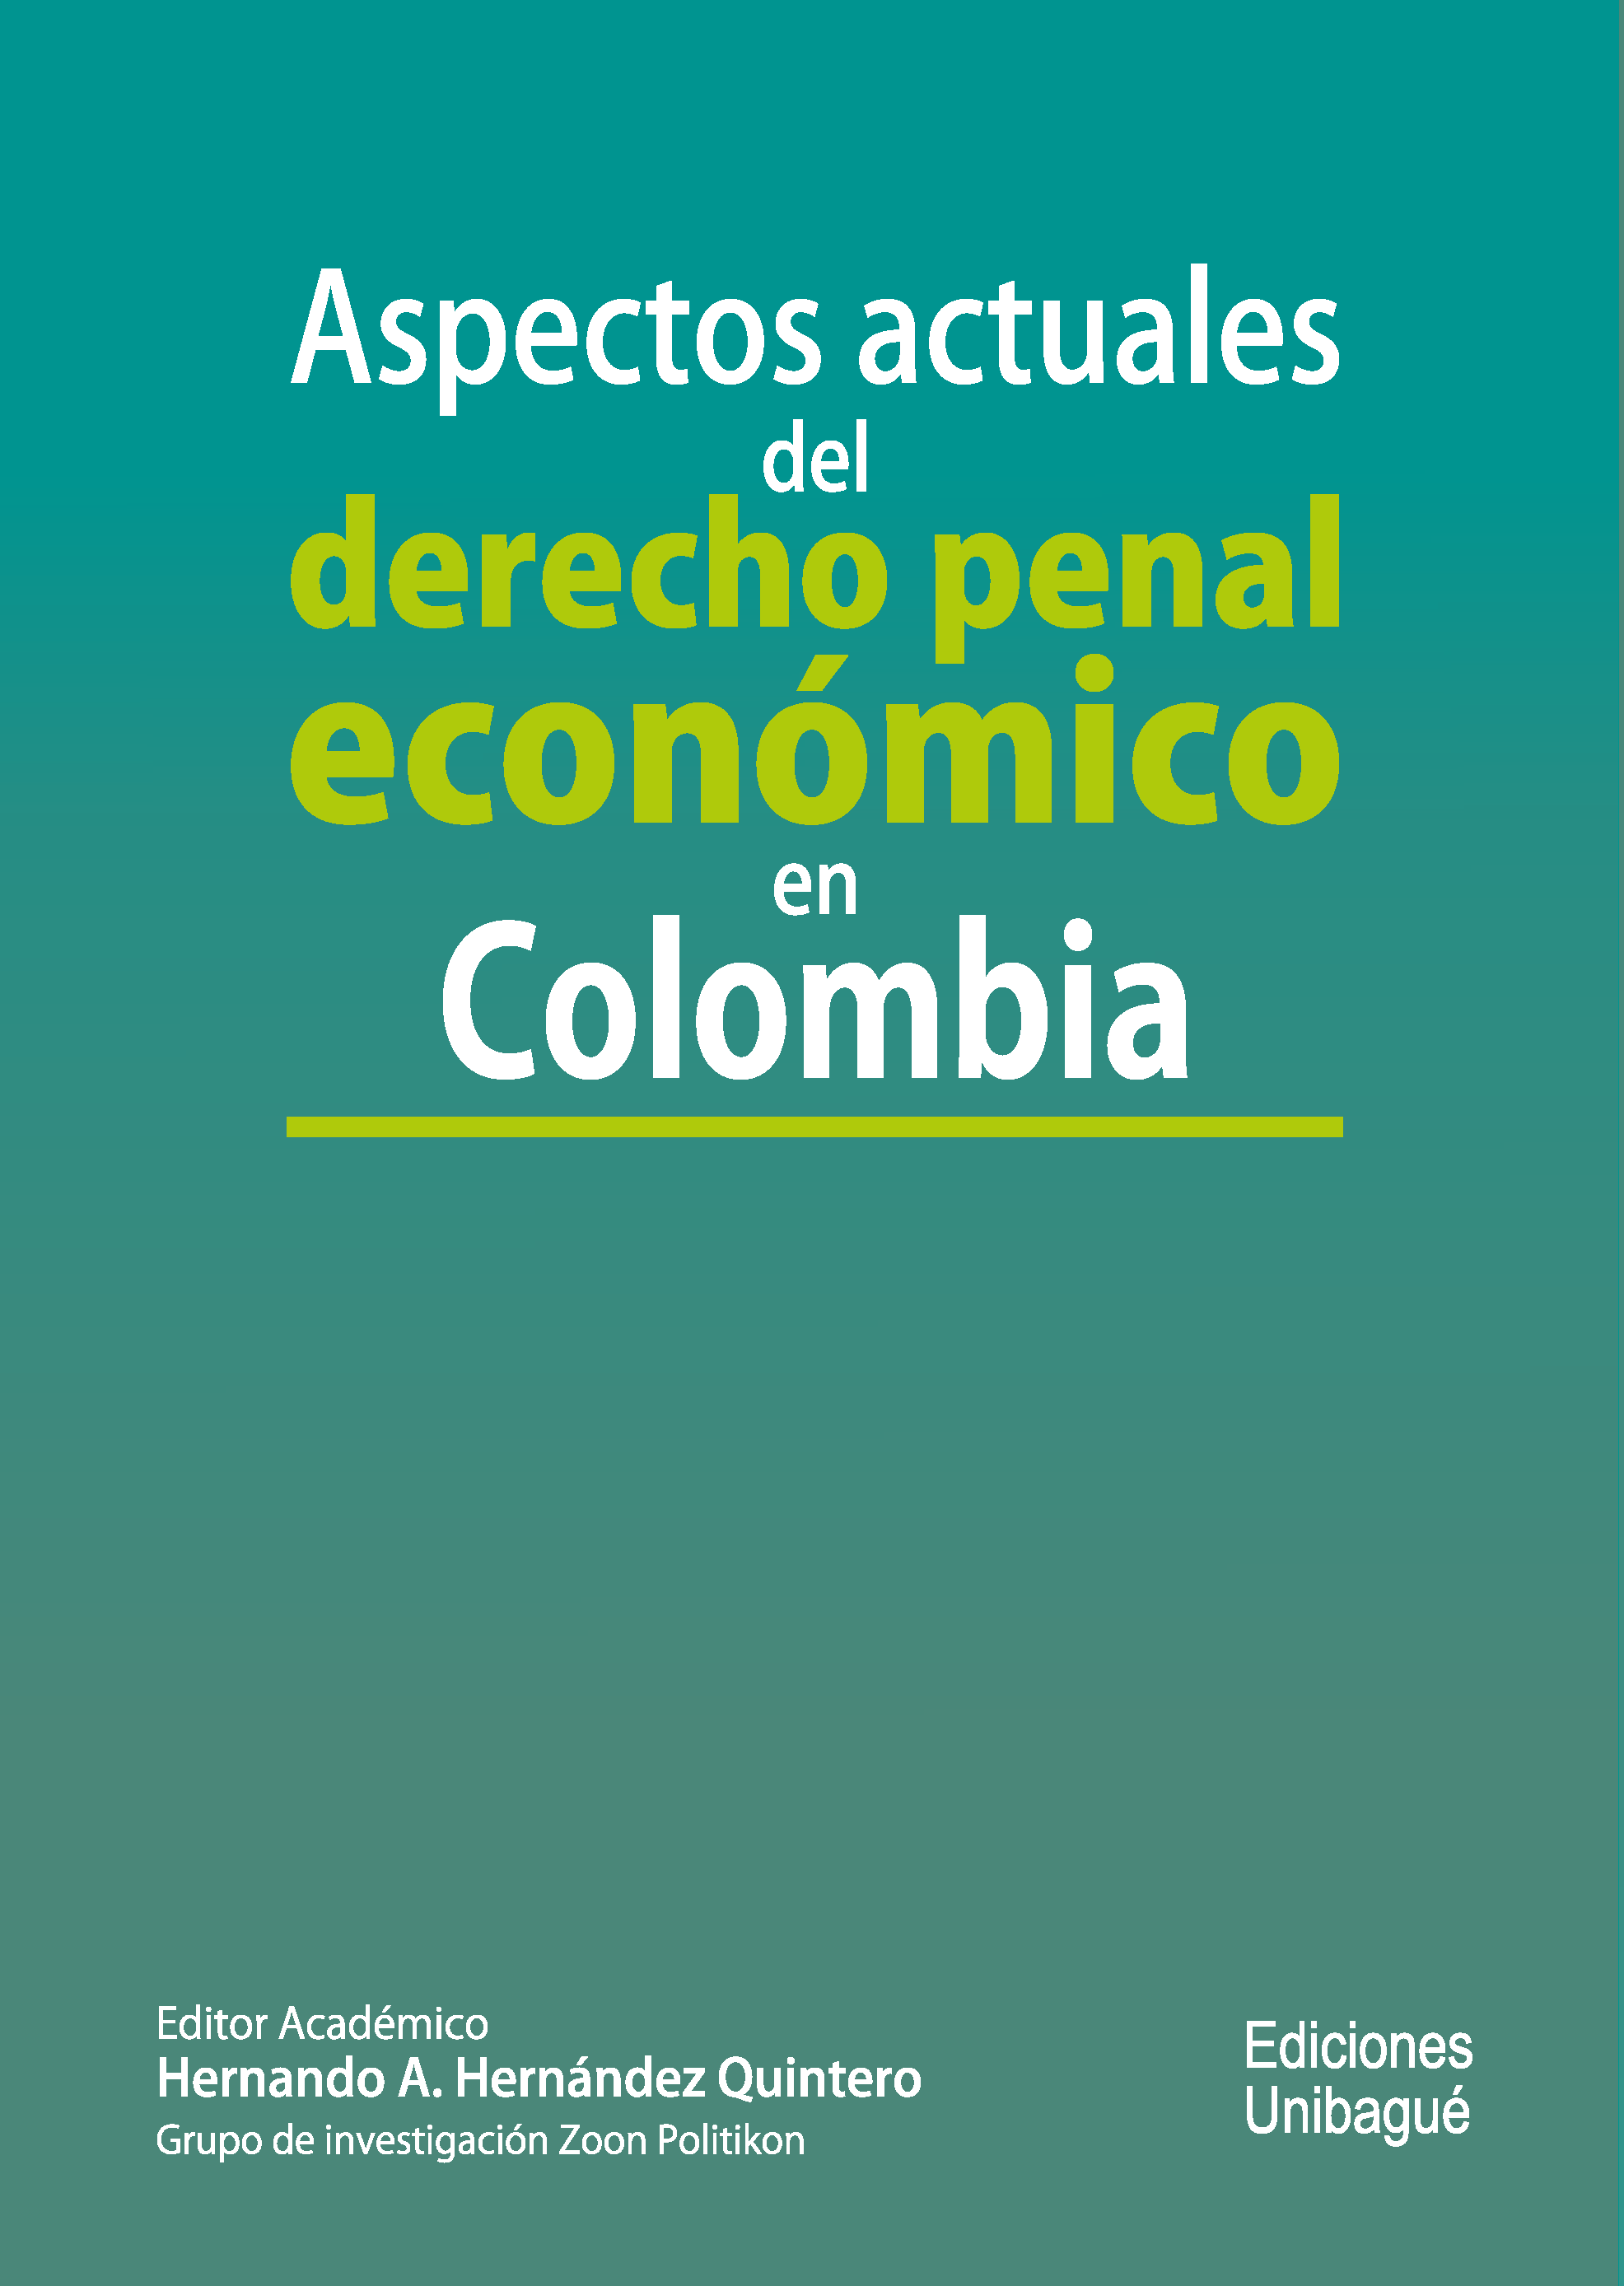 Cover of Aspectos actuales del derecho penal económico en Colombia